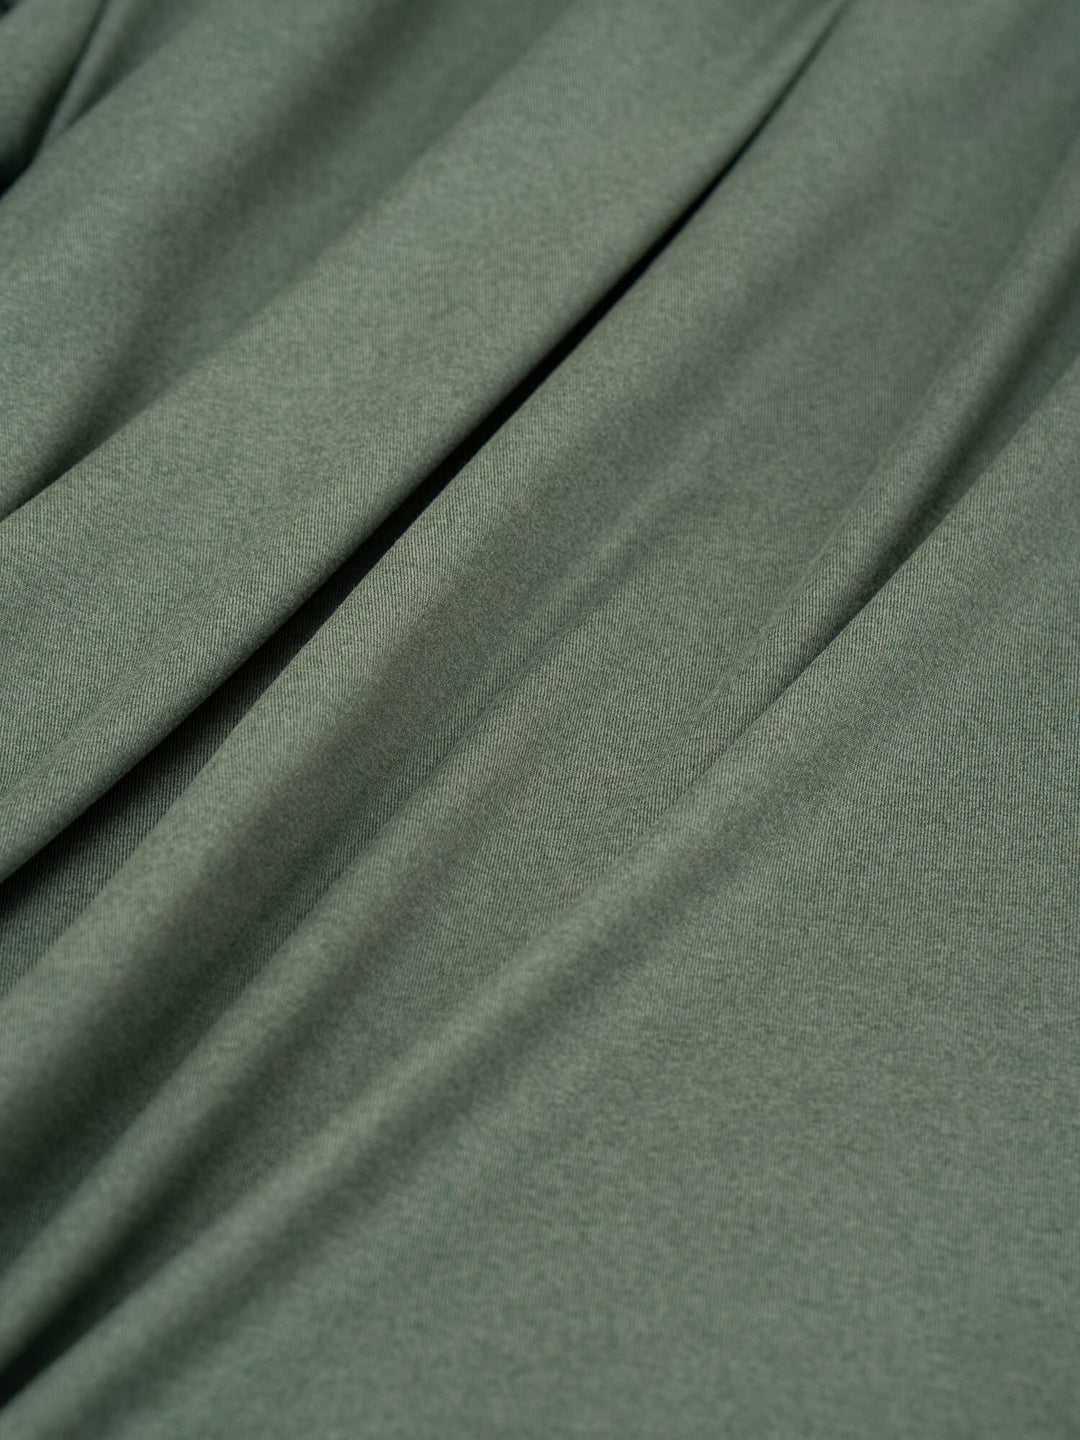 Soft Tech T-Shirt - Fern Green Marl - Ryderwear